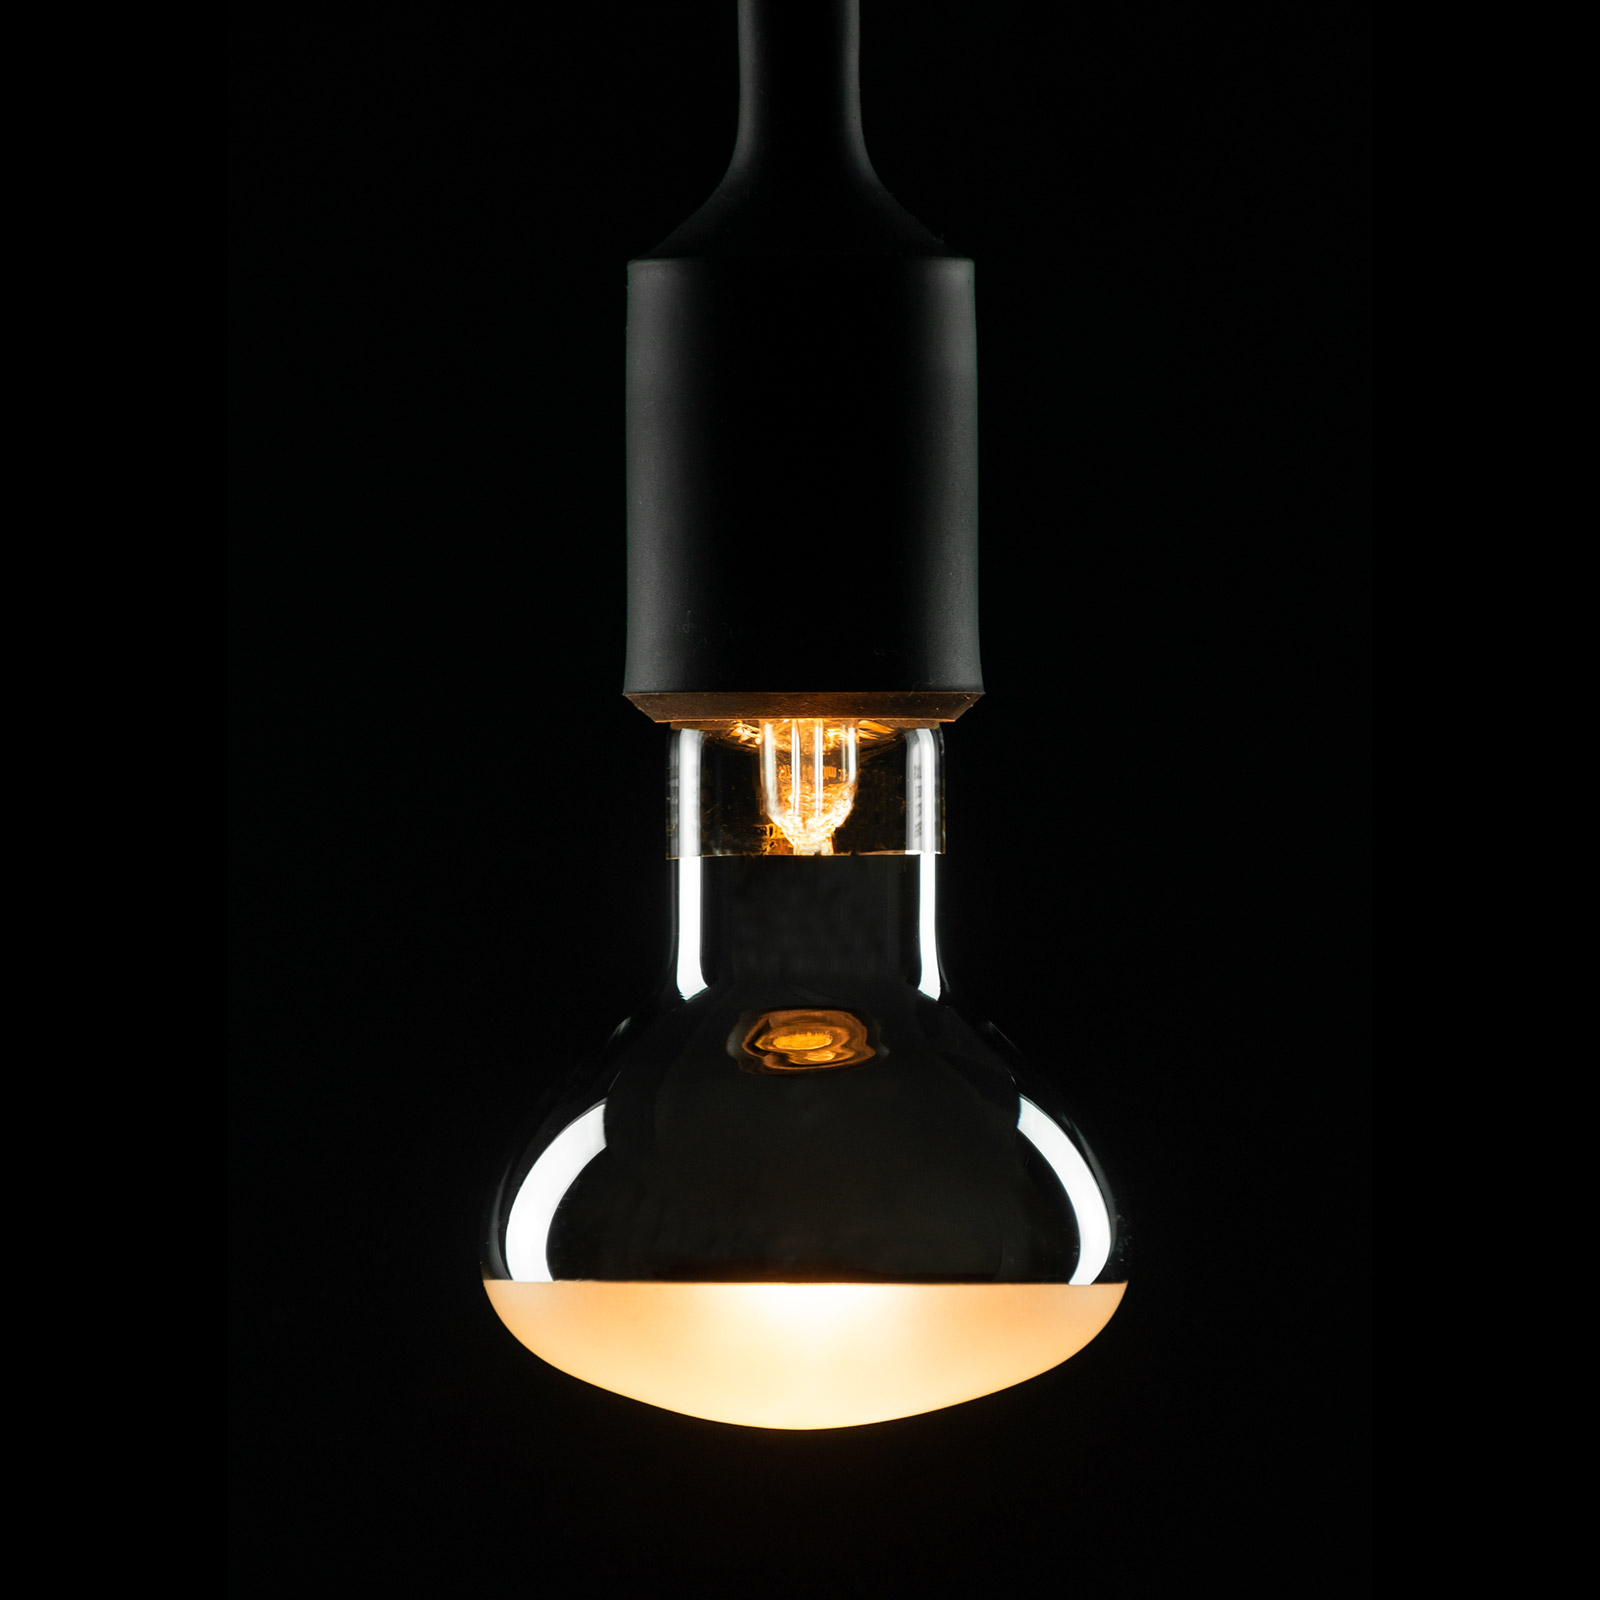 Vergelden Neuken pijnlijk E27 7W R80 LED-reflectorlamp, dimbaar | Lampen24.be